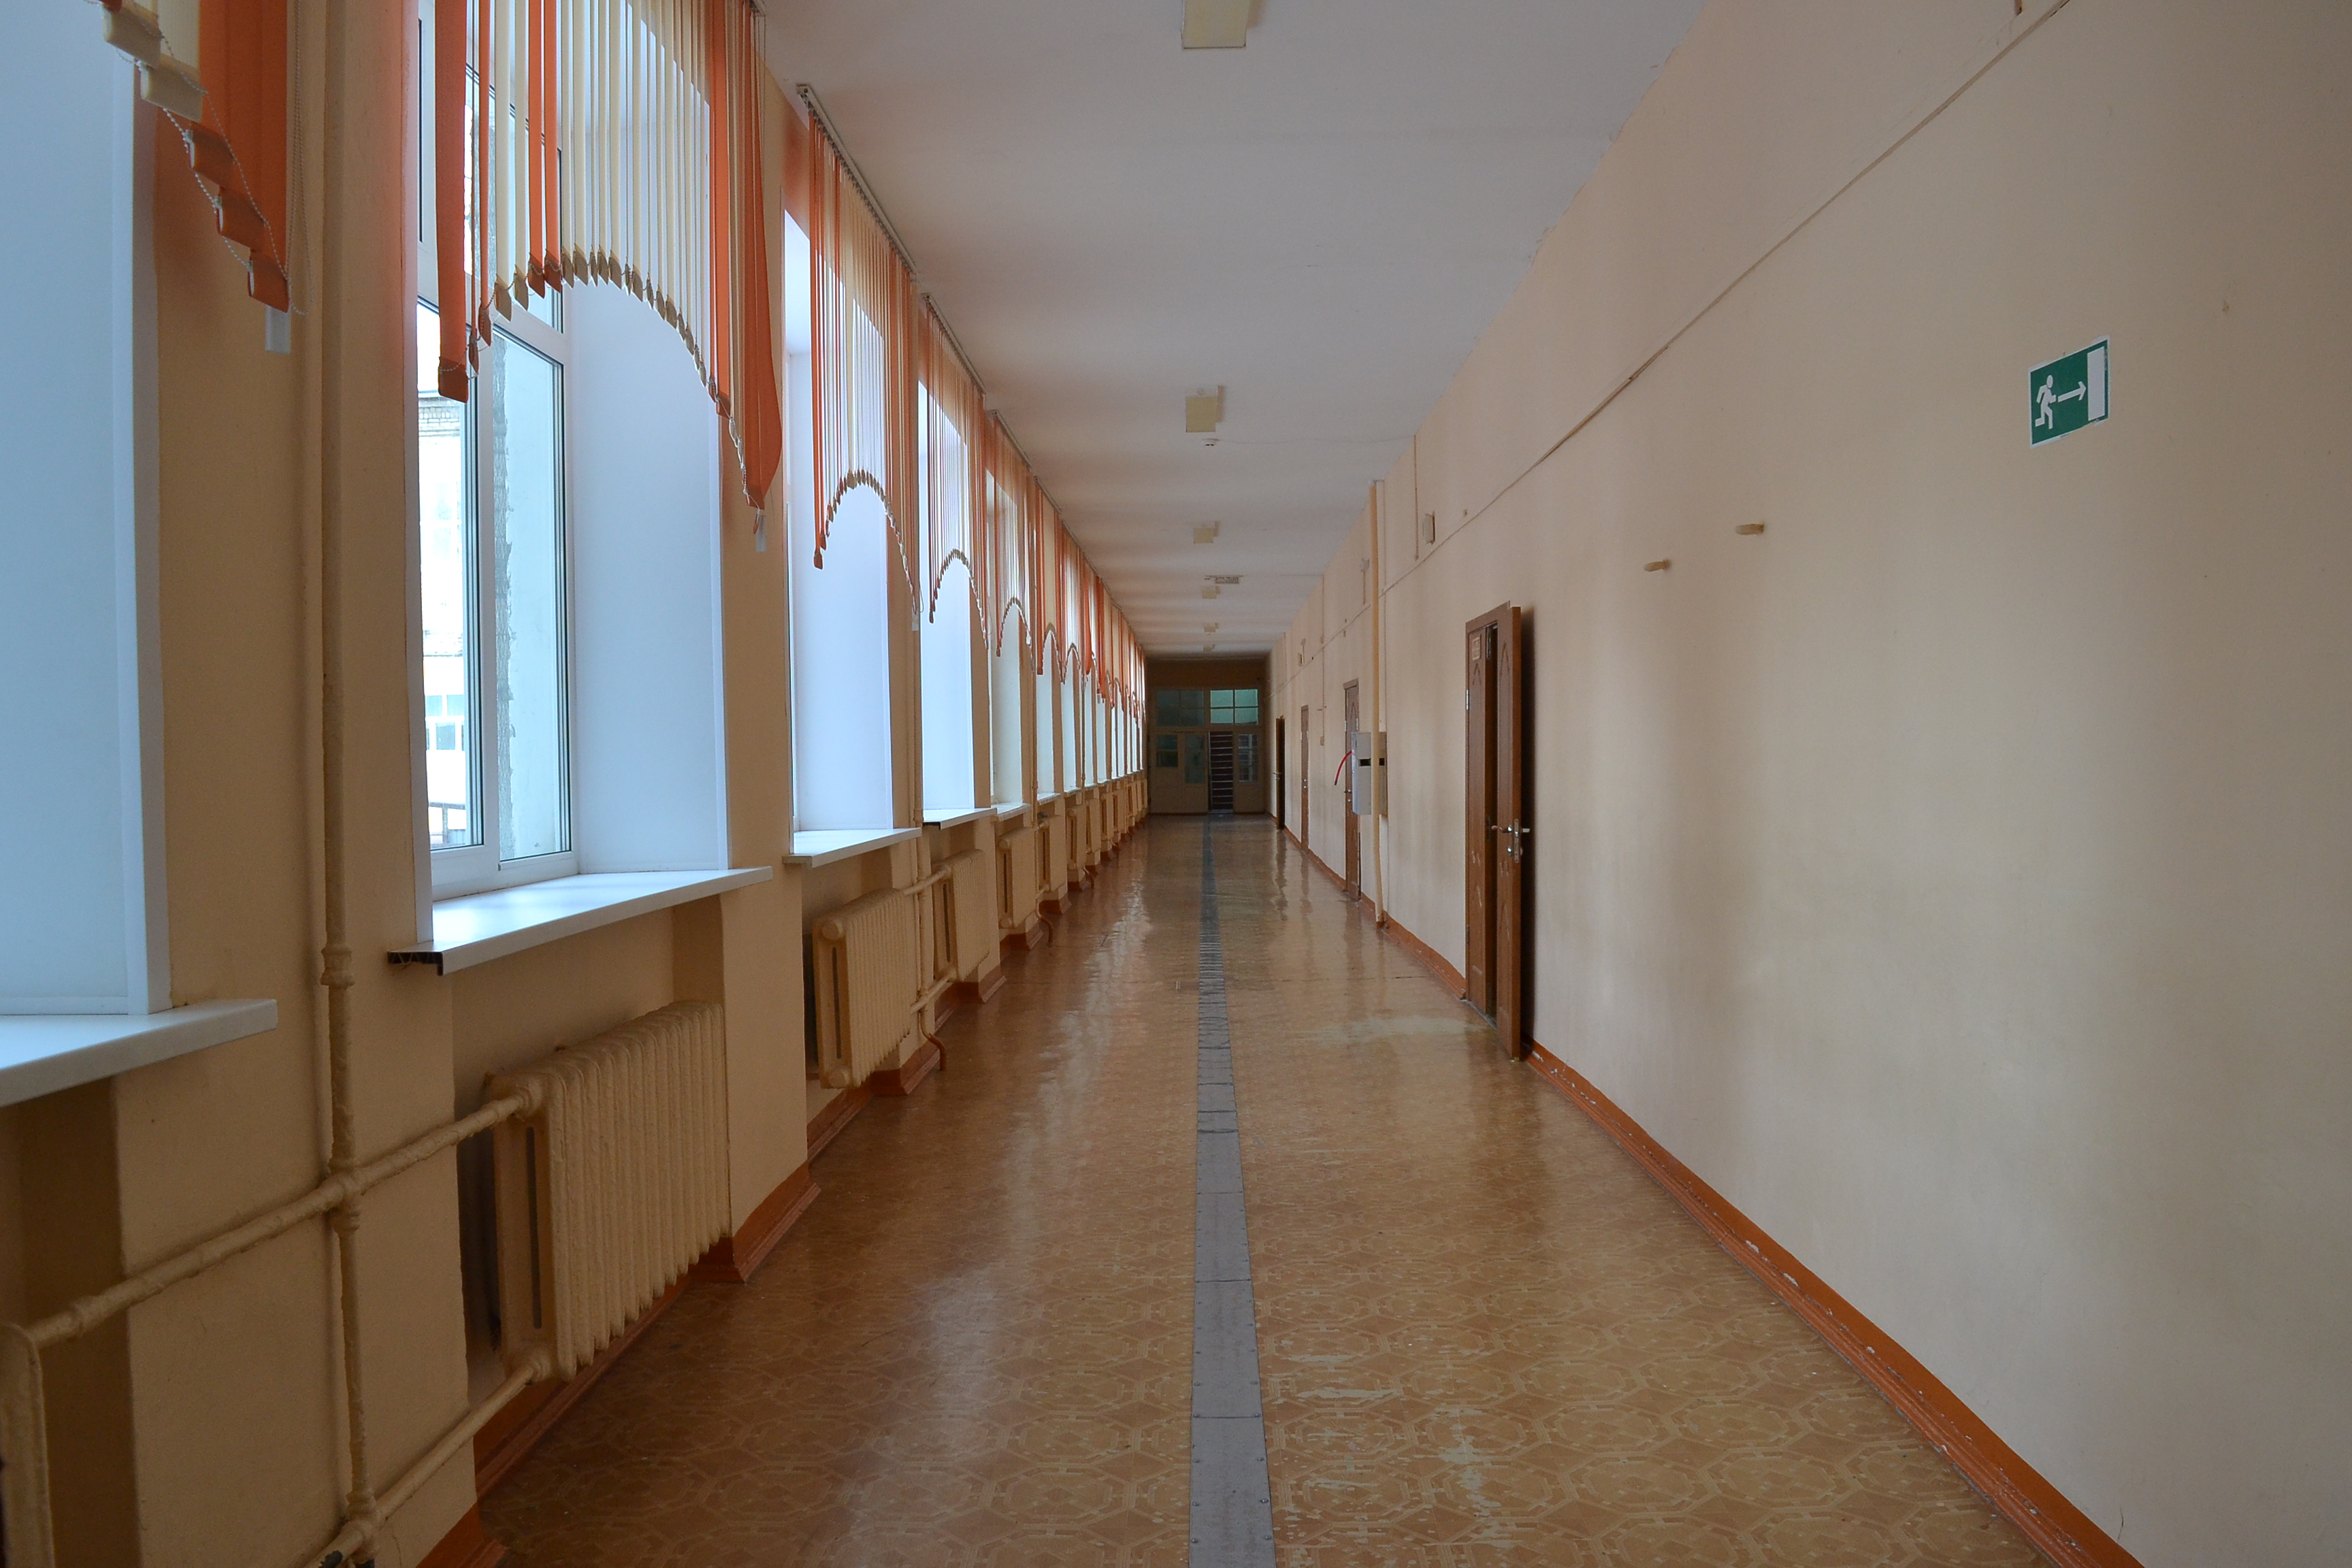 Второй этаж в школе. Школьный коридор. Коридор школы. Первый этаж школы. Школьный коридор на первом этаже.